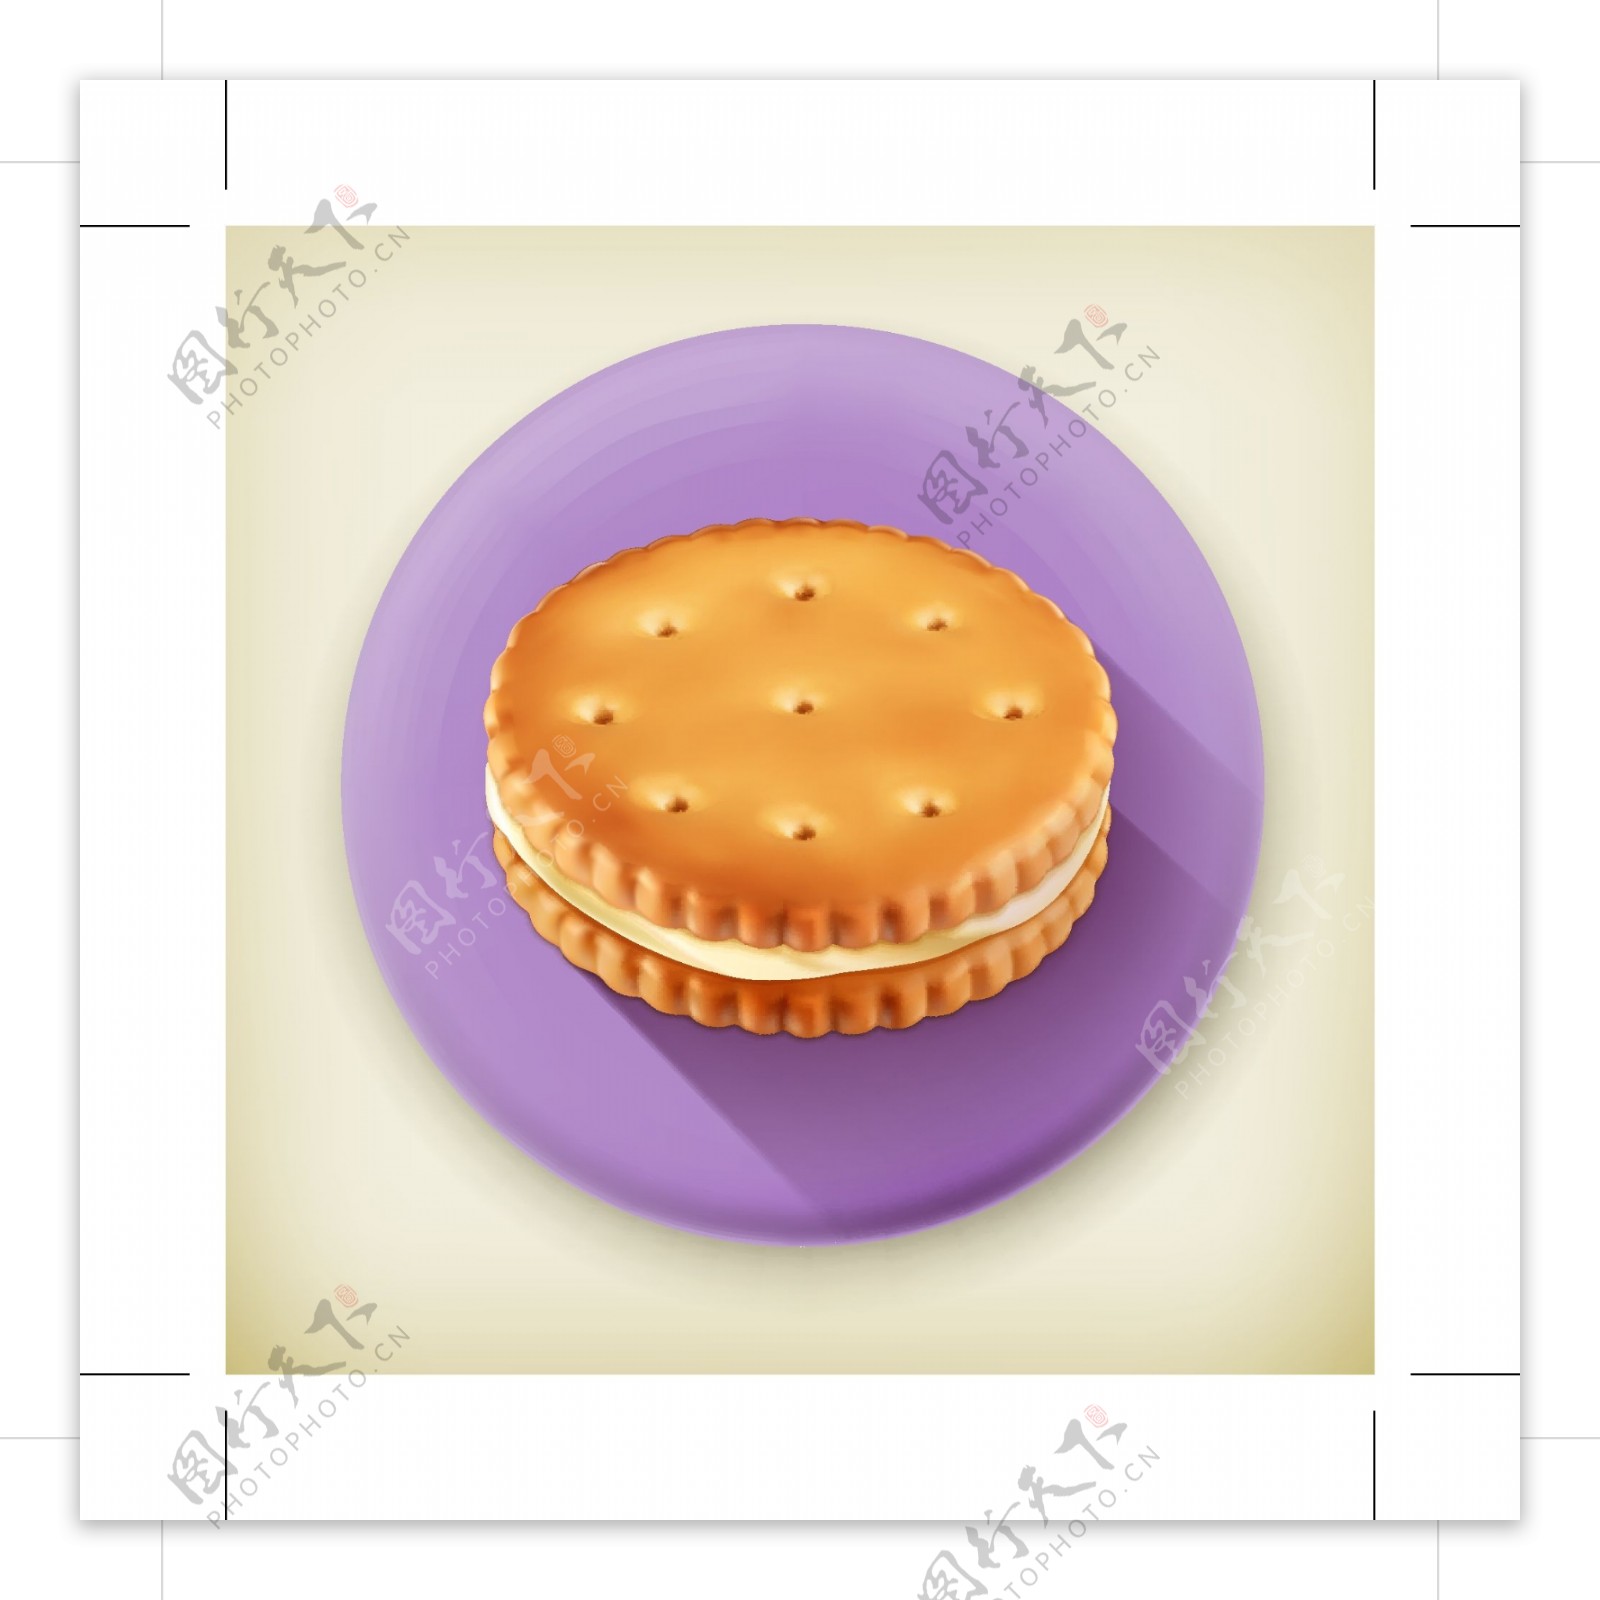 饼干ICON图标标志图片